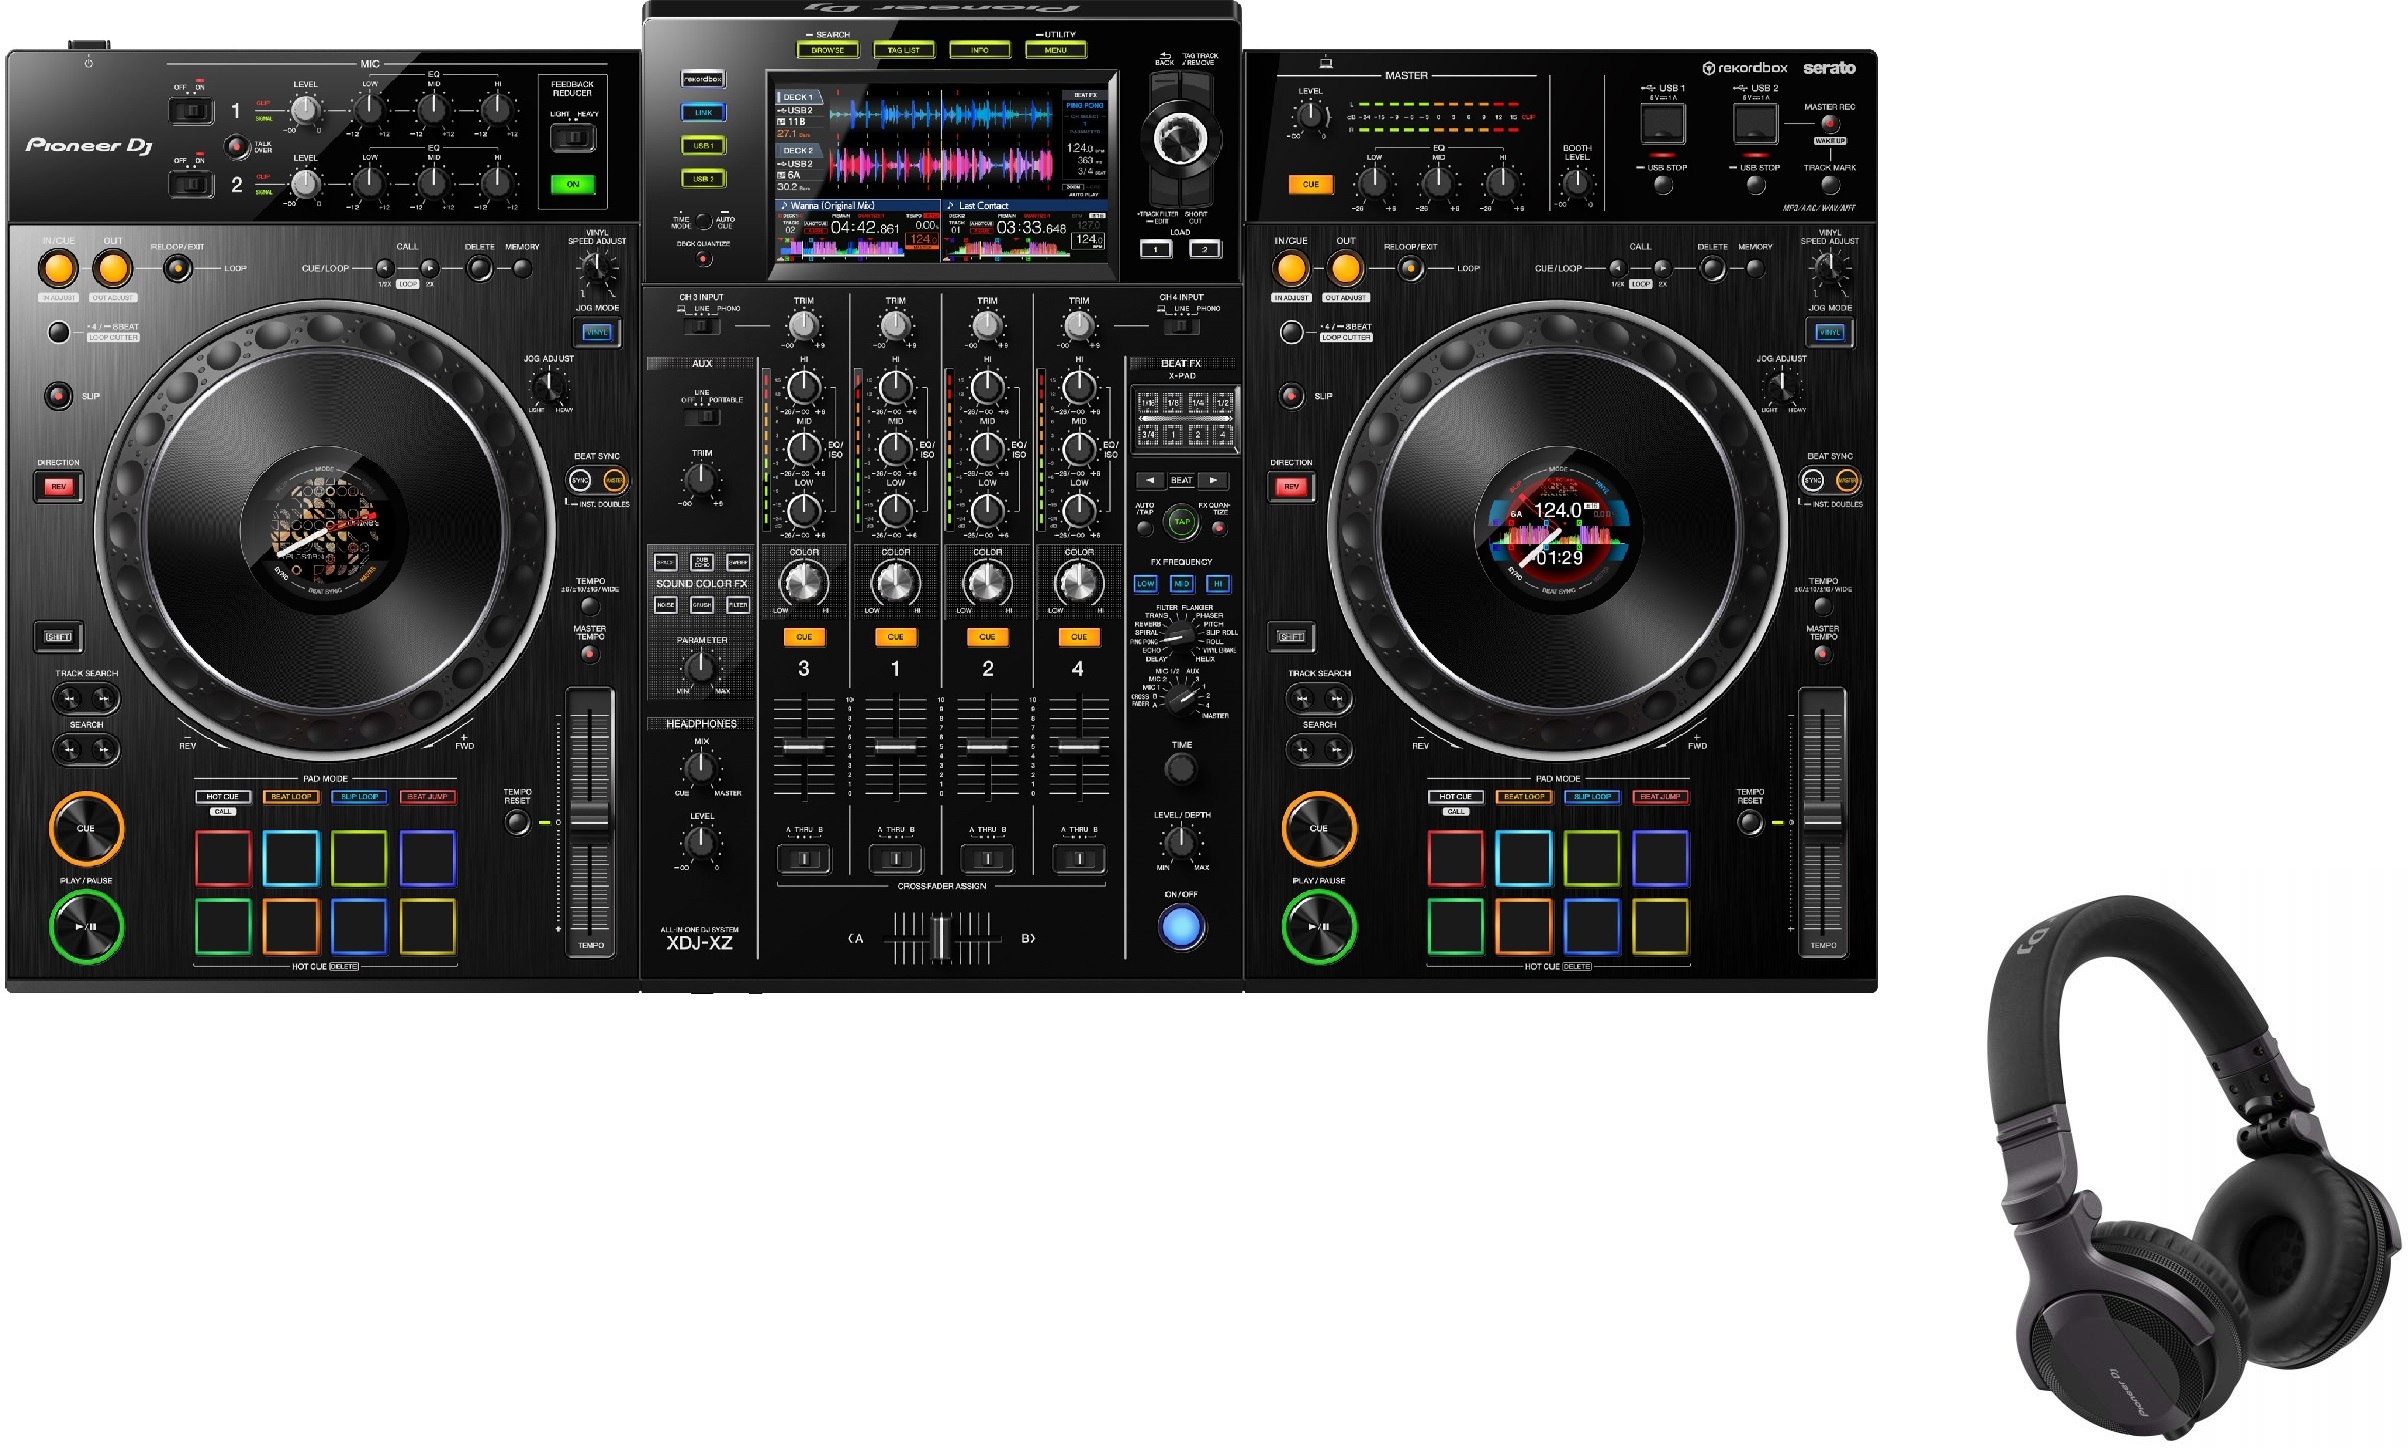 Pioneer Dj Xdj-xz + Casque Hdj-cue1 - Full DJ set - Main picture